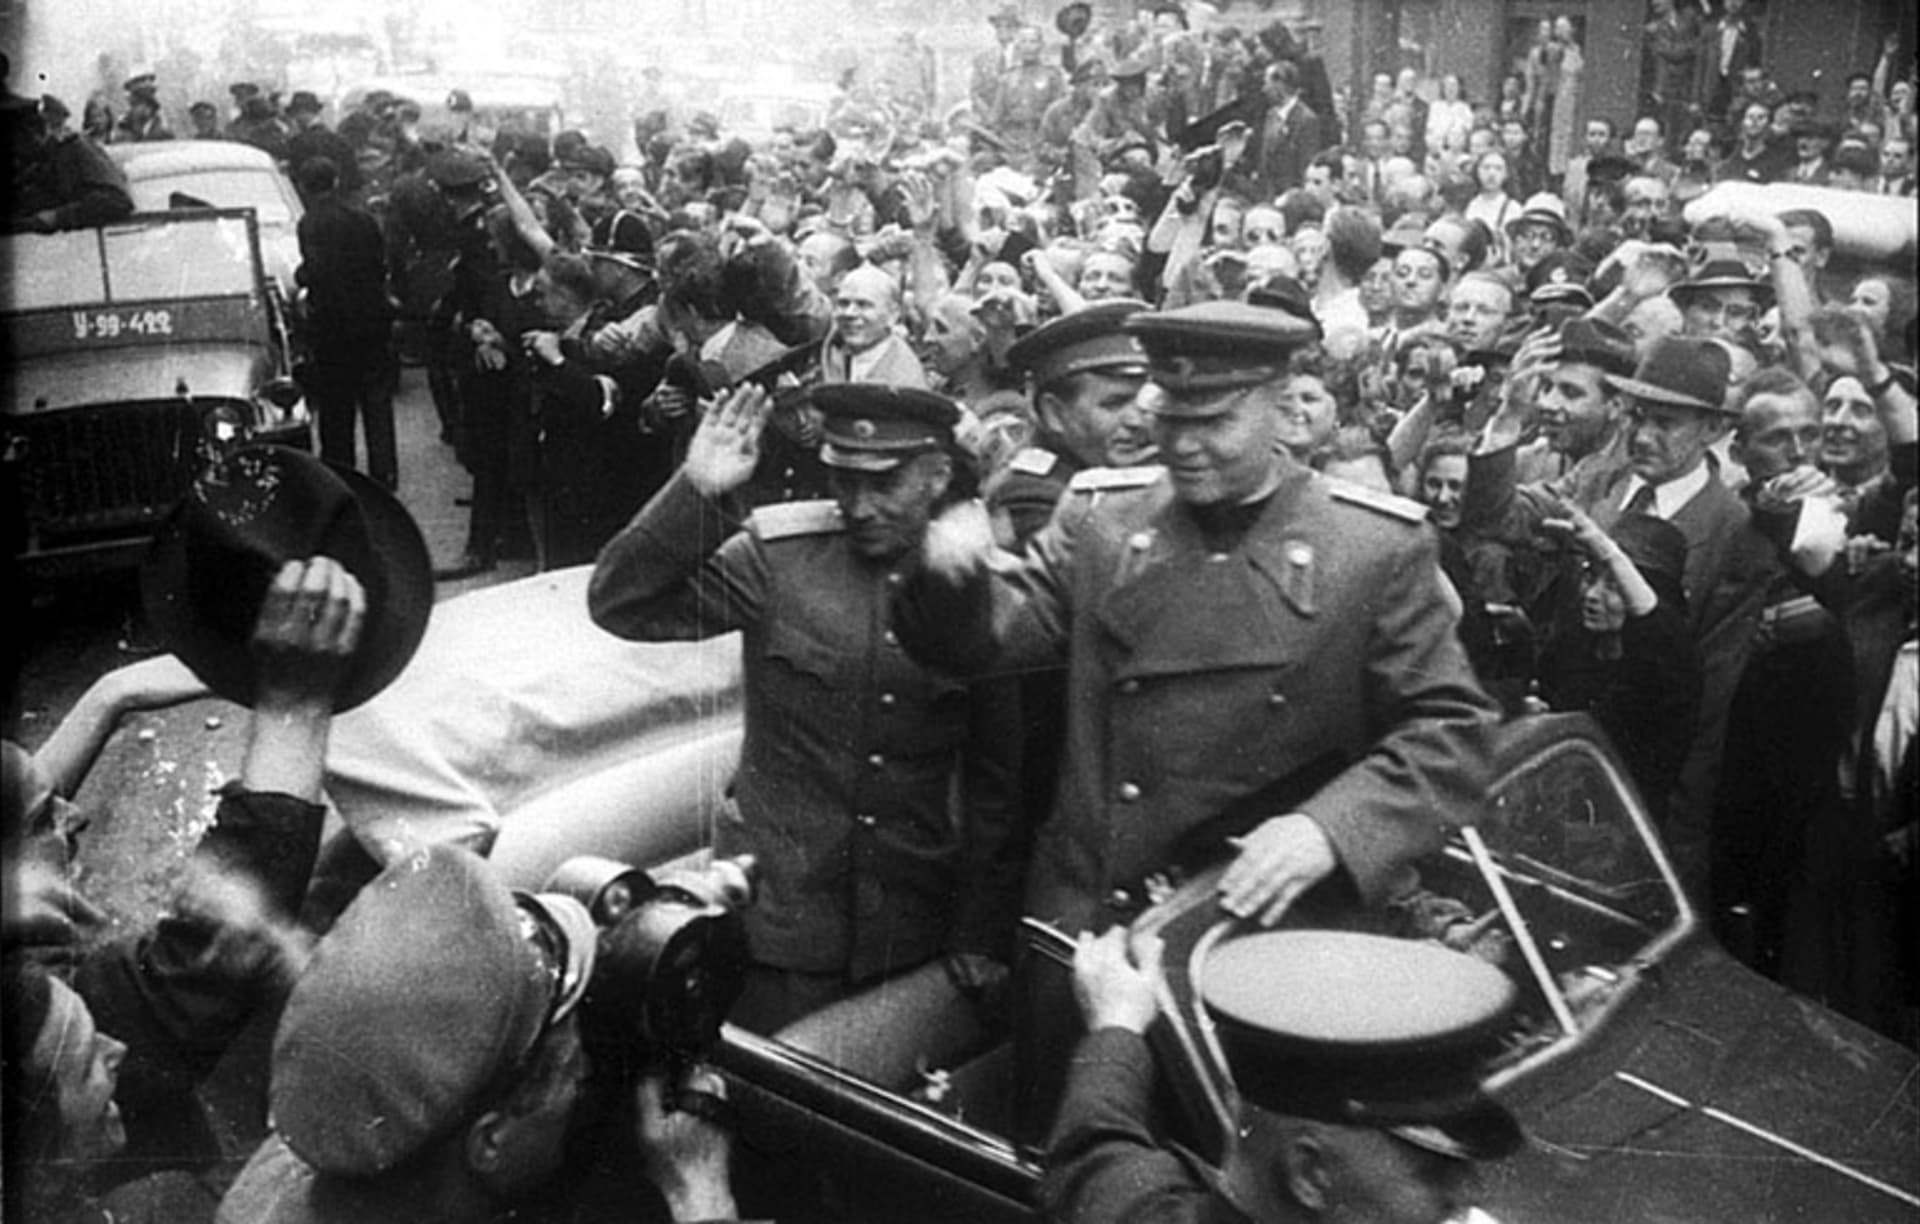 V Praze již bylo dobojováno, sovětský maršál Koněv se zdraví s Pražany